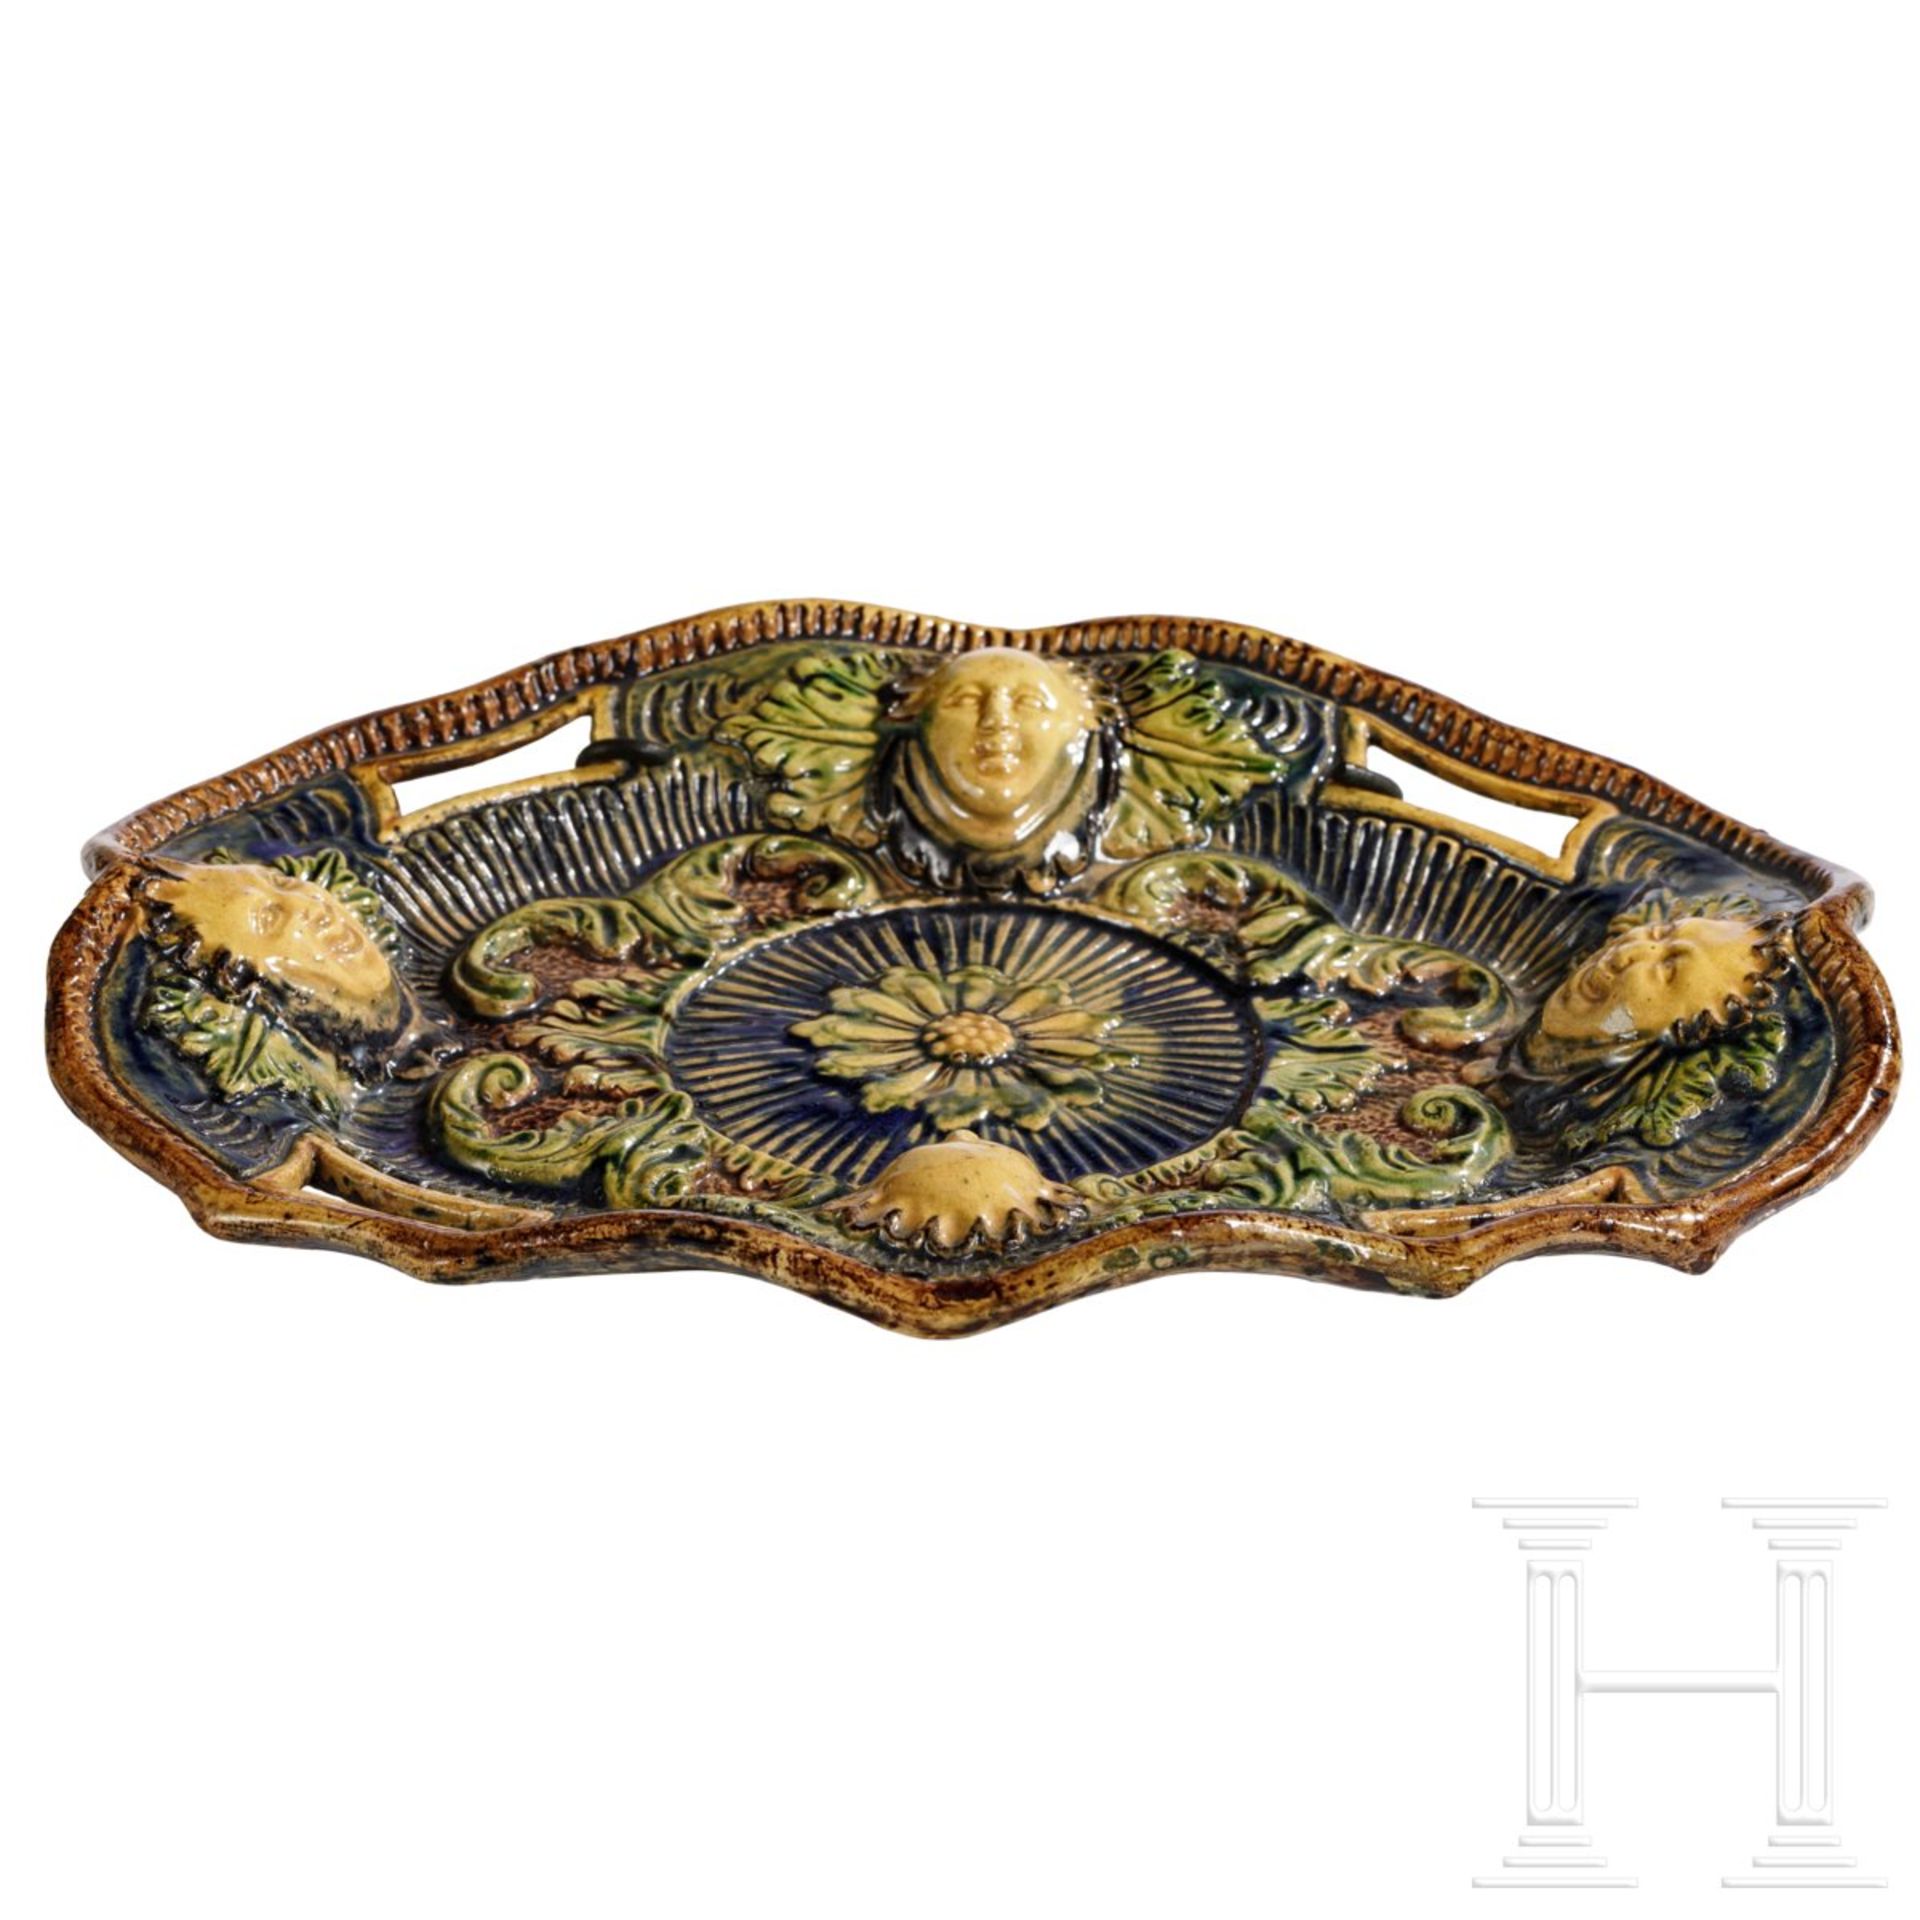 Ovale Fayence-Schale in der Art des George Palessy, Frankreich, um 1600 - Bild 2 aus 4